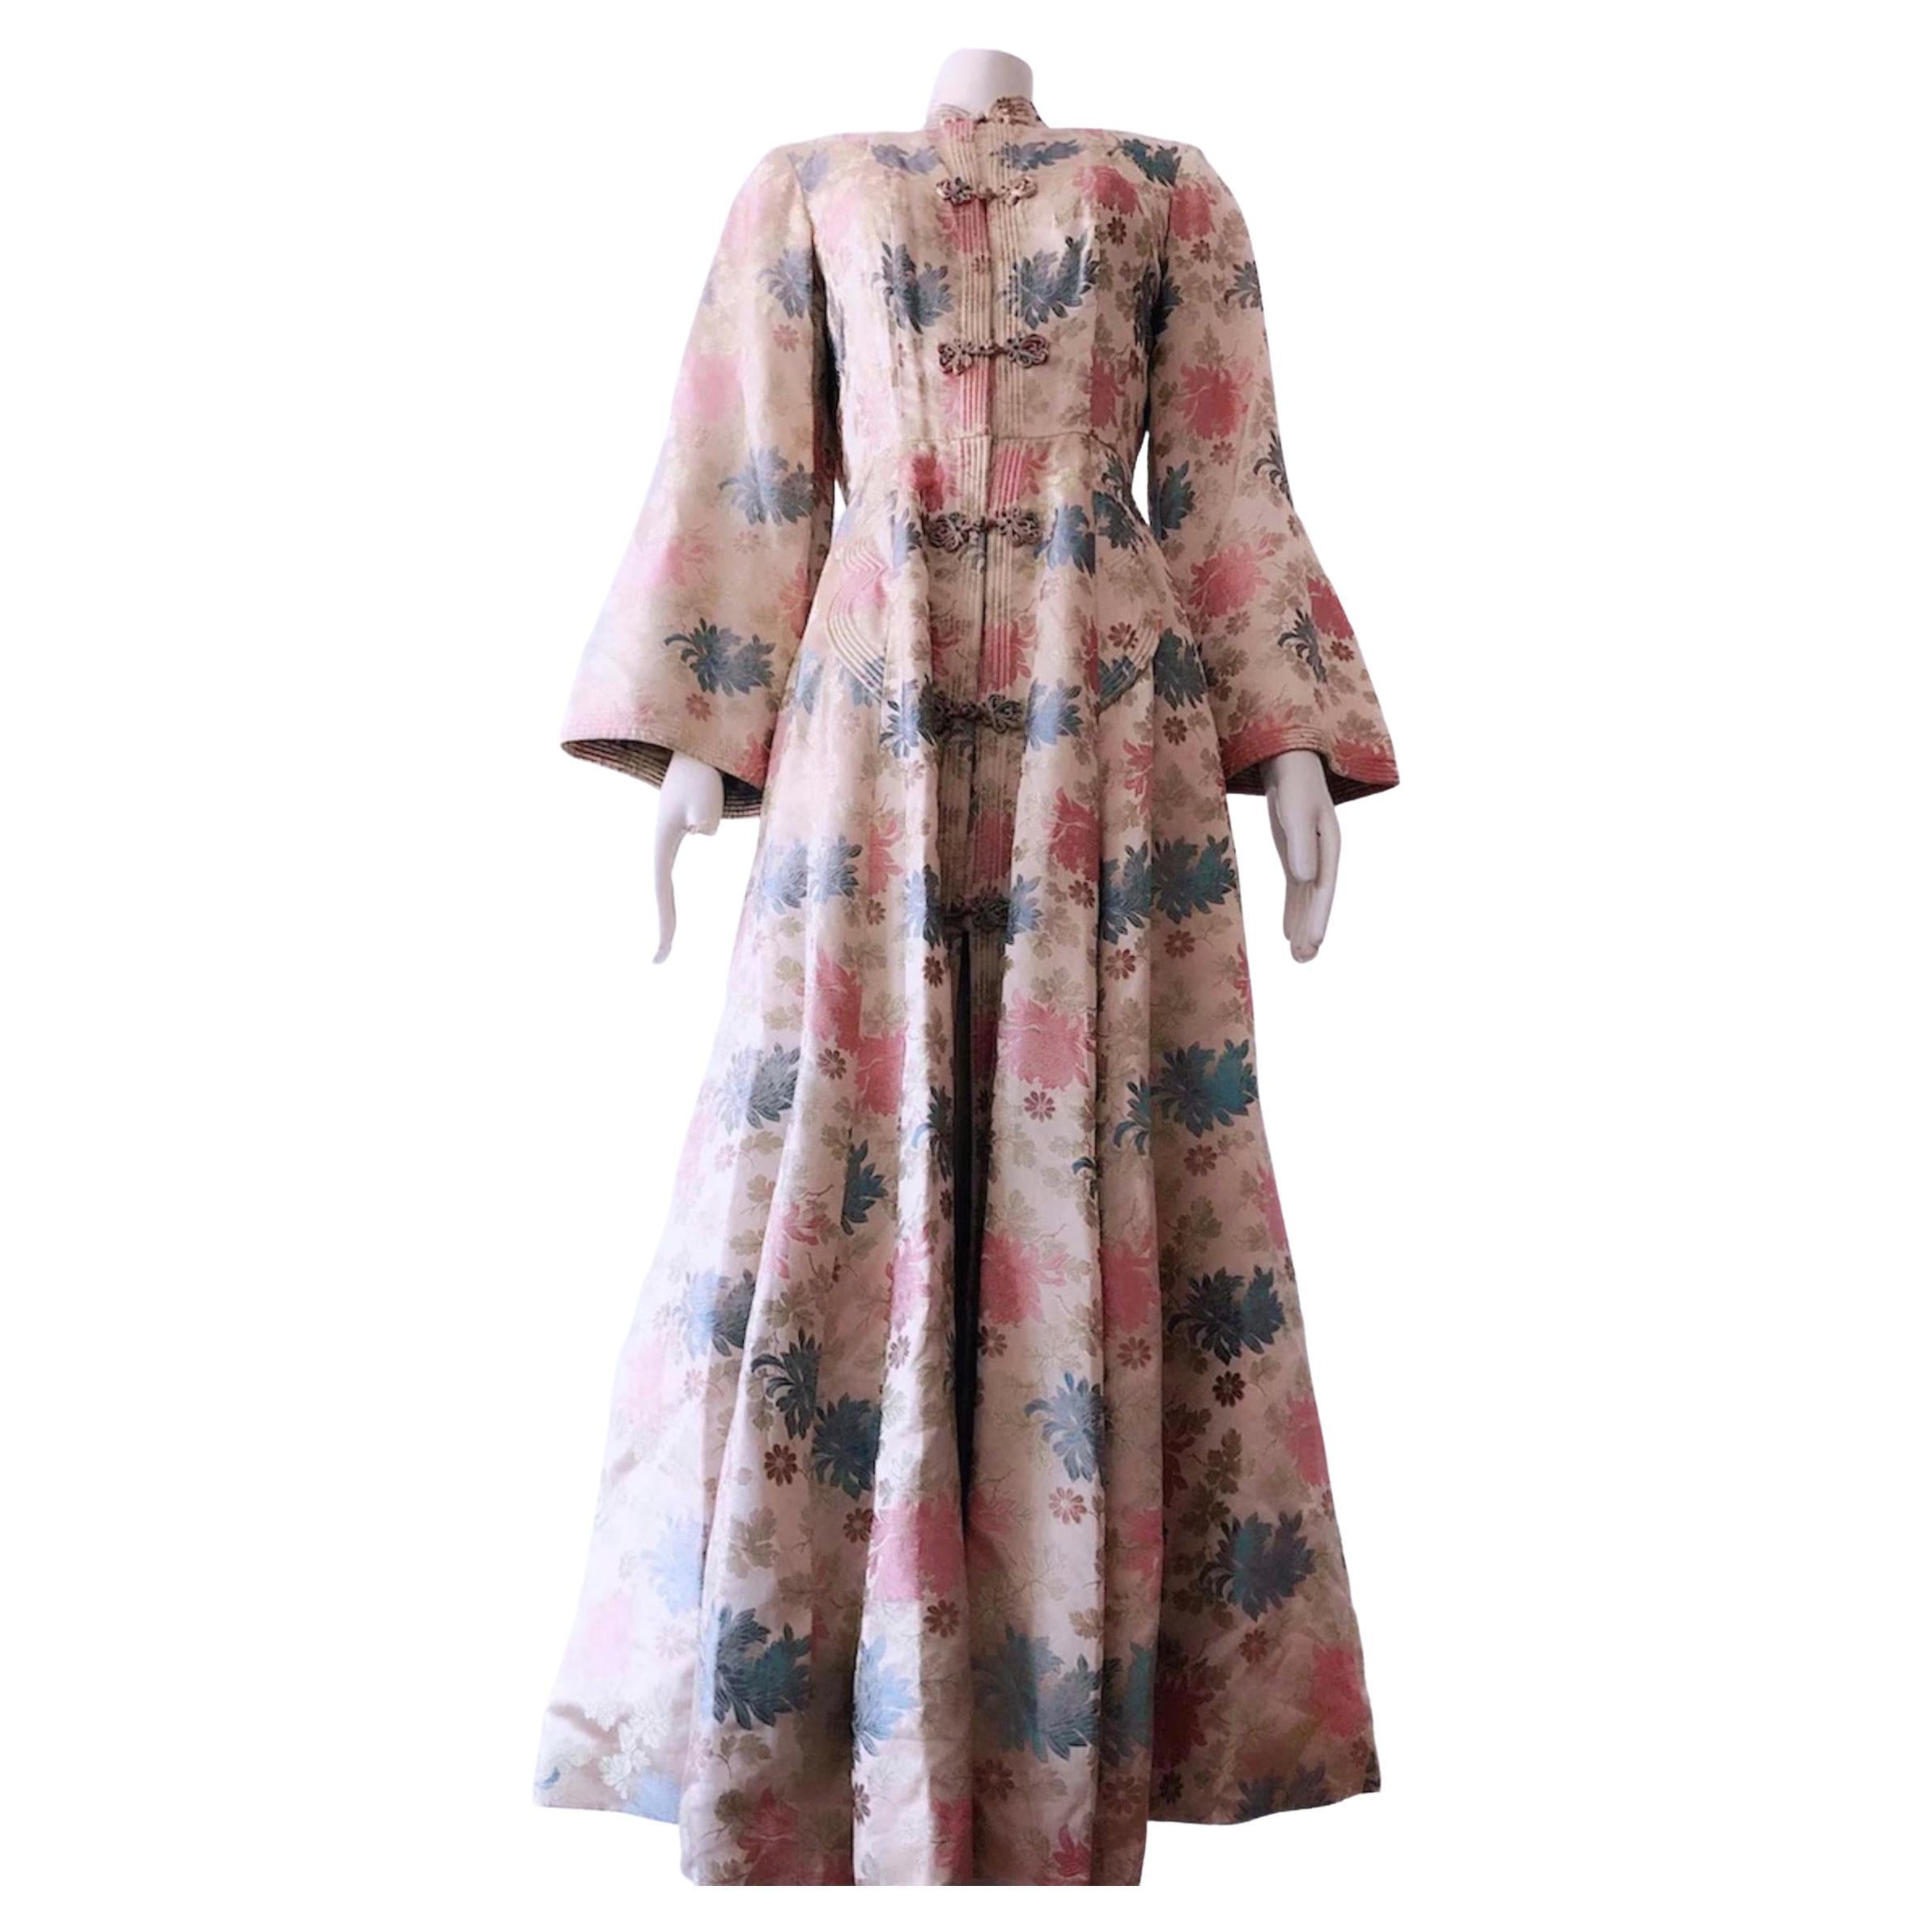 Magnifique robe kimono en soie Vintage 1950s Couture Asian Robe Coat 40s 50s